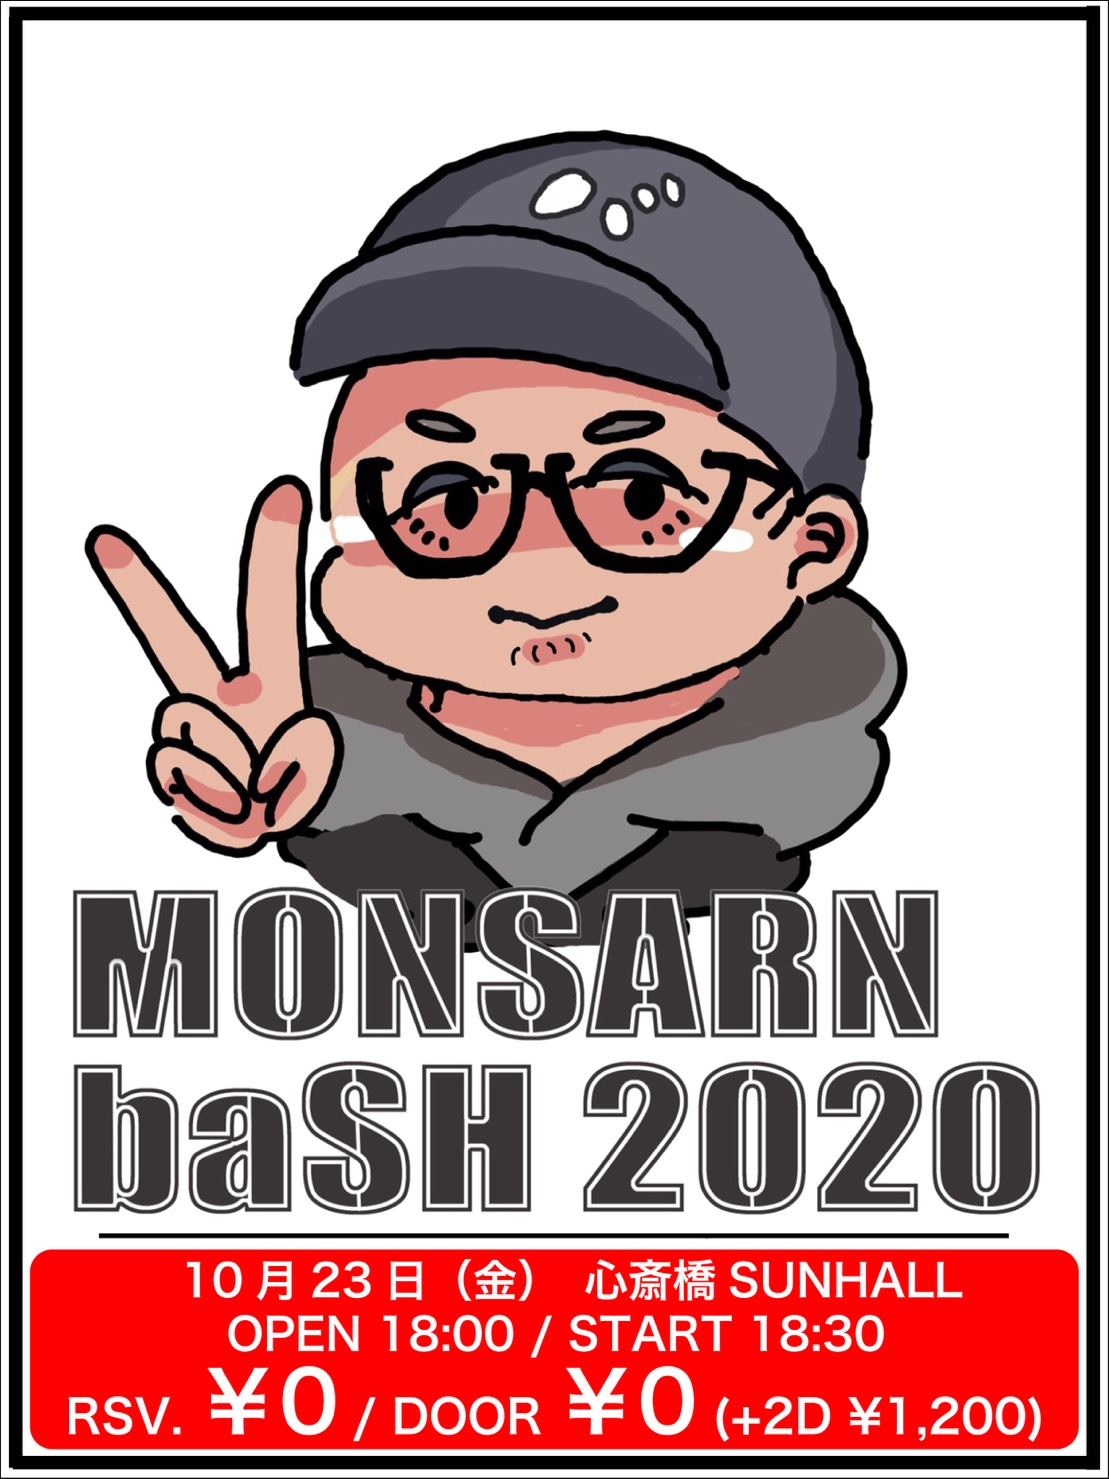 おたばいと-wota byte- Presents 【MONSARN baSH 2020】